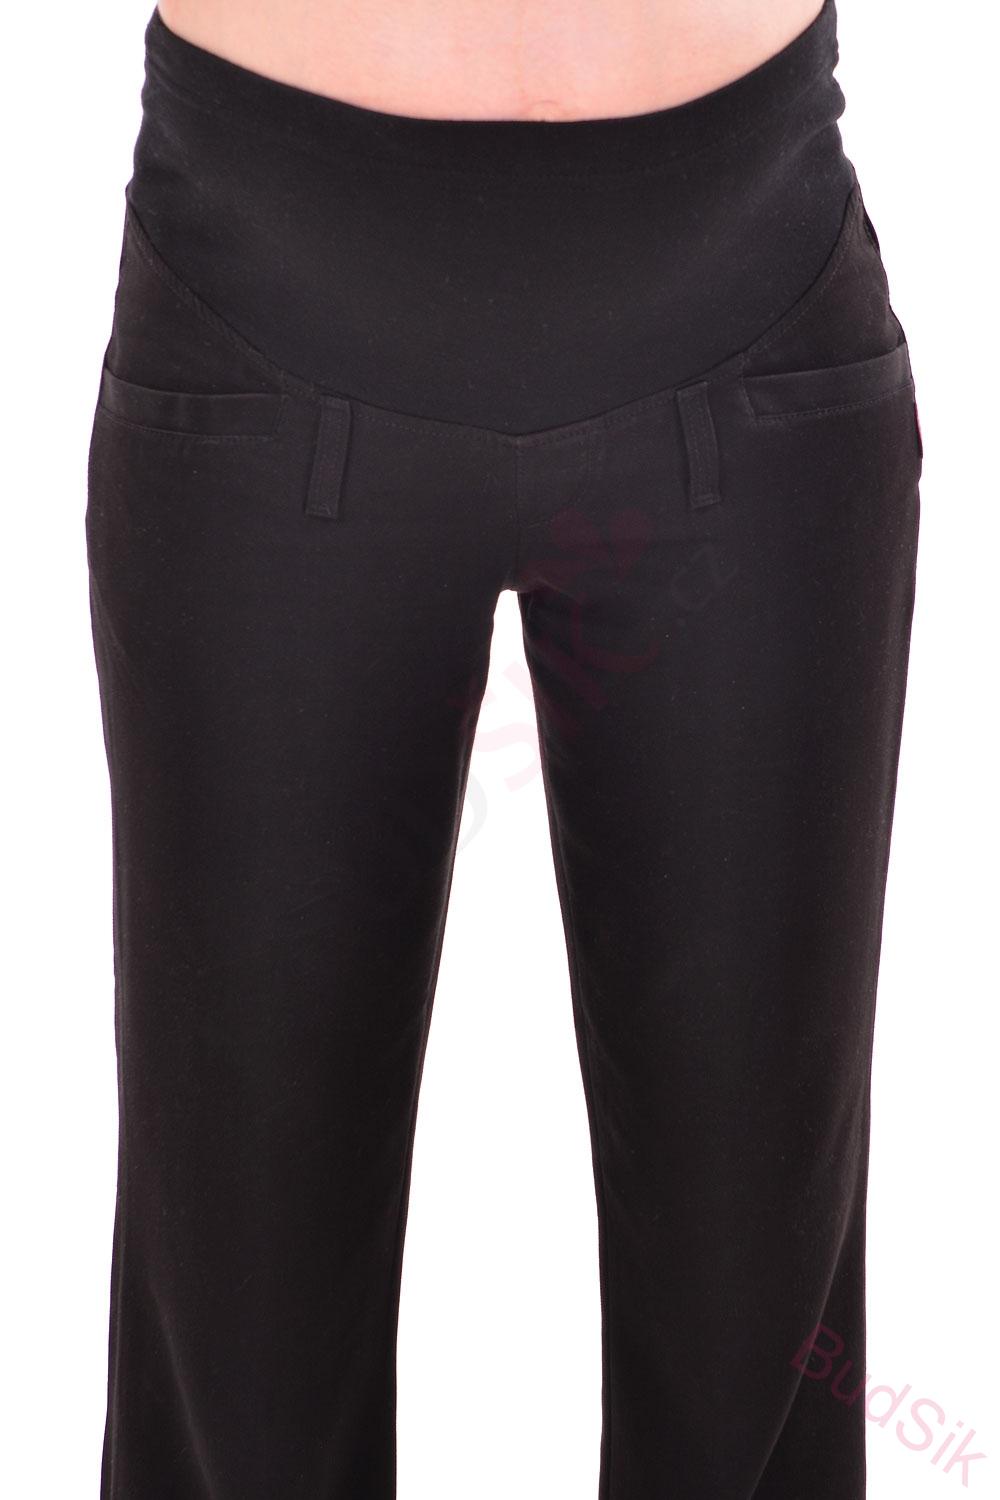 Windstar těhotenské kalhoty elegant 507-černá